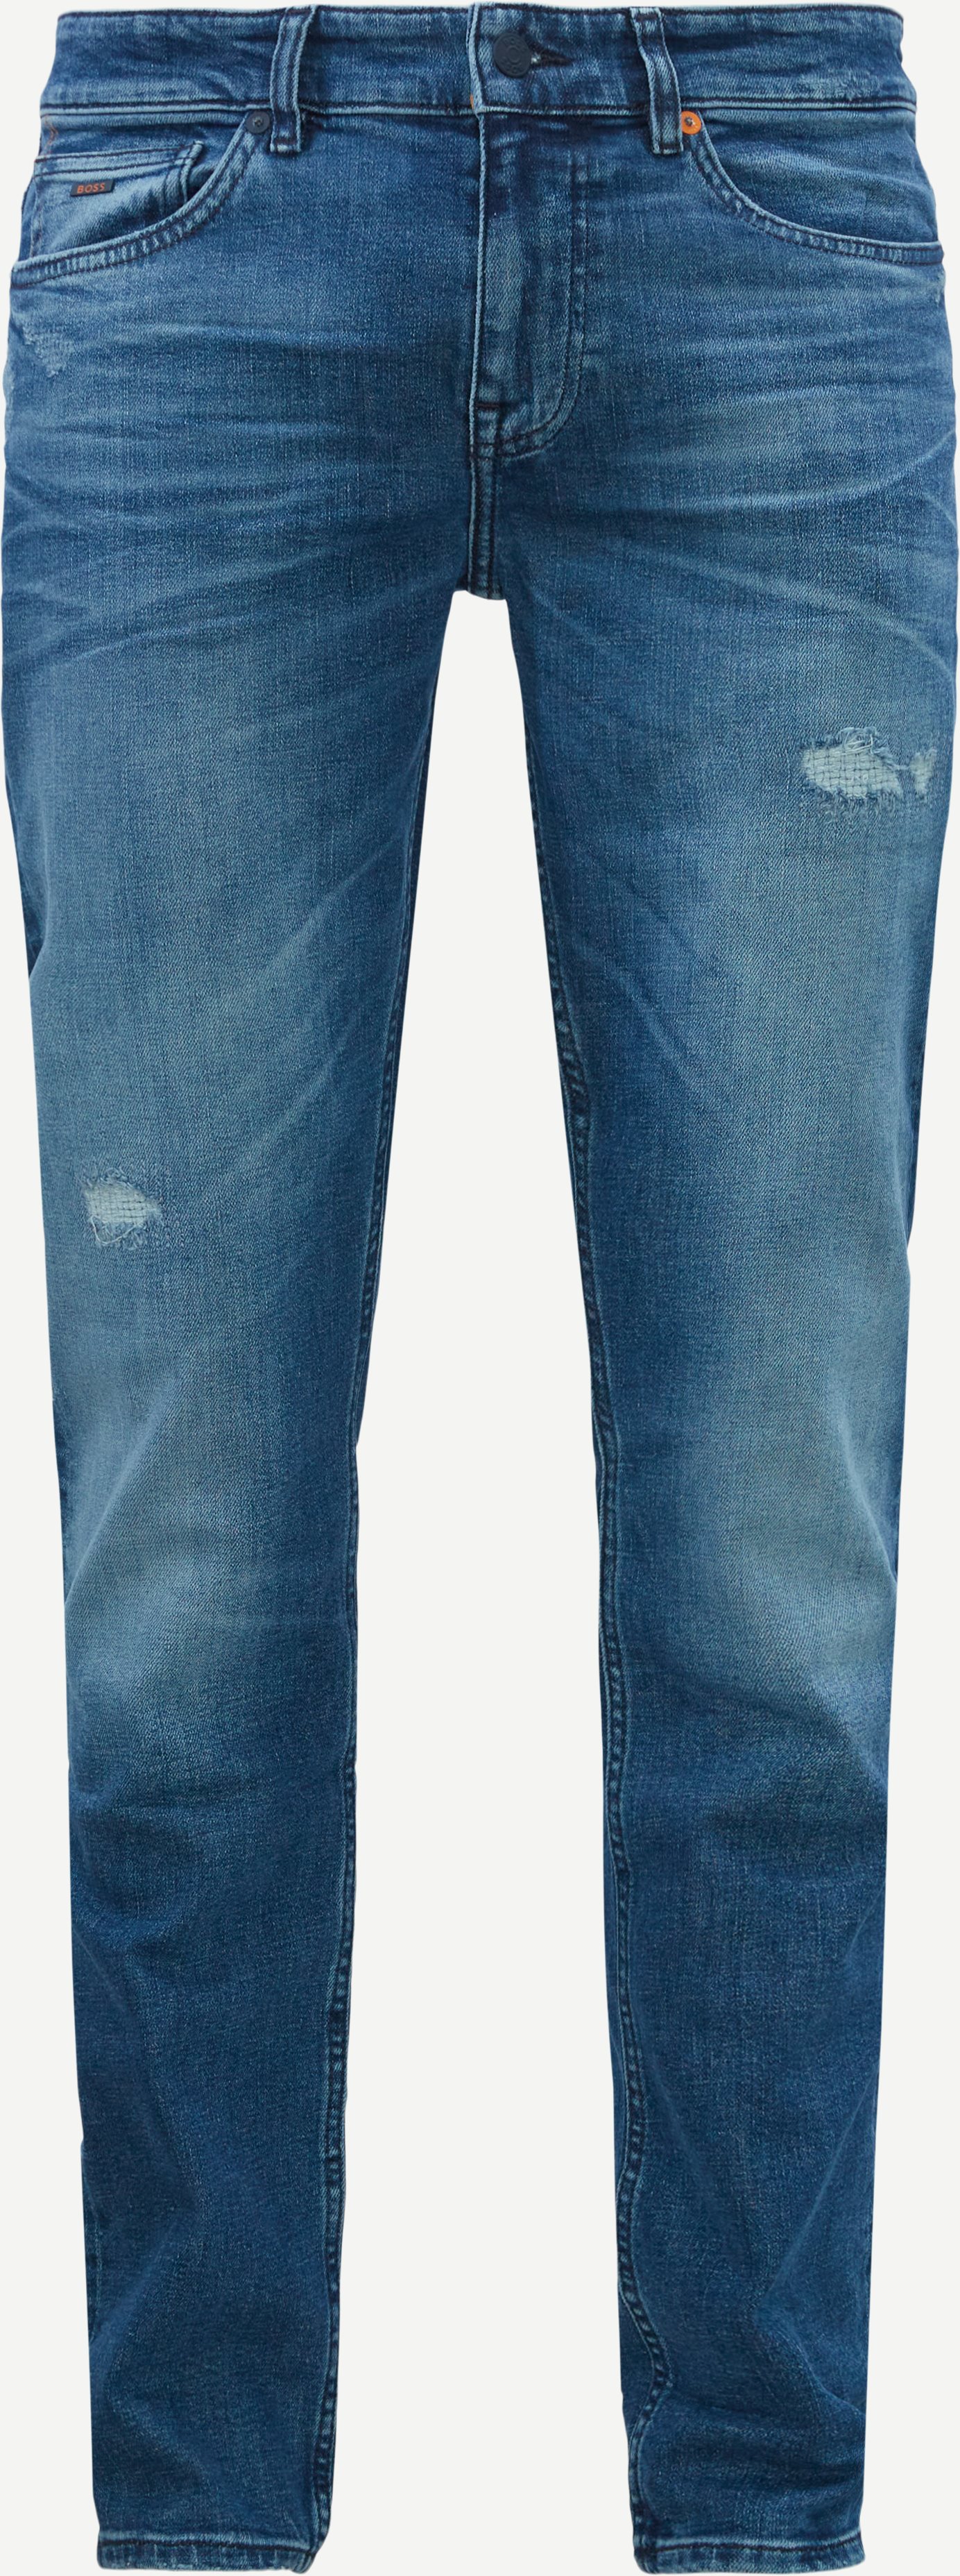 Delaware Bc Family Jeans - Jeans - Slim fit - Denim